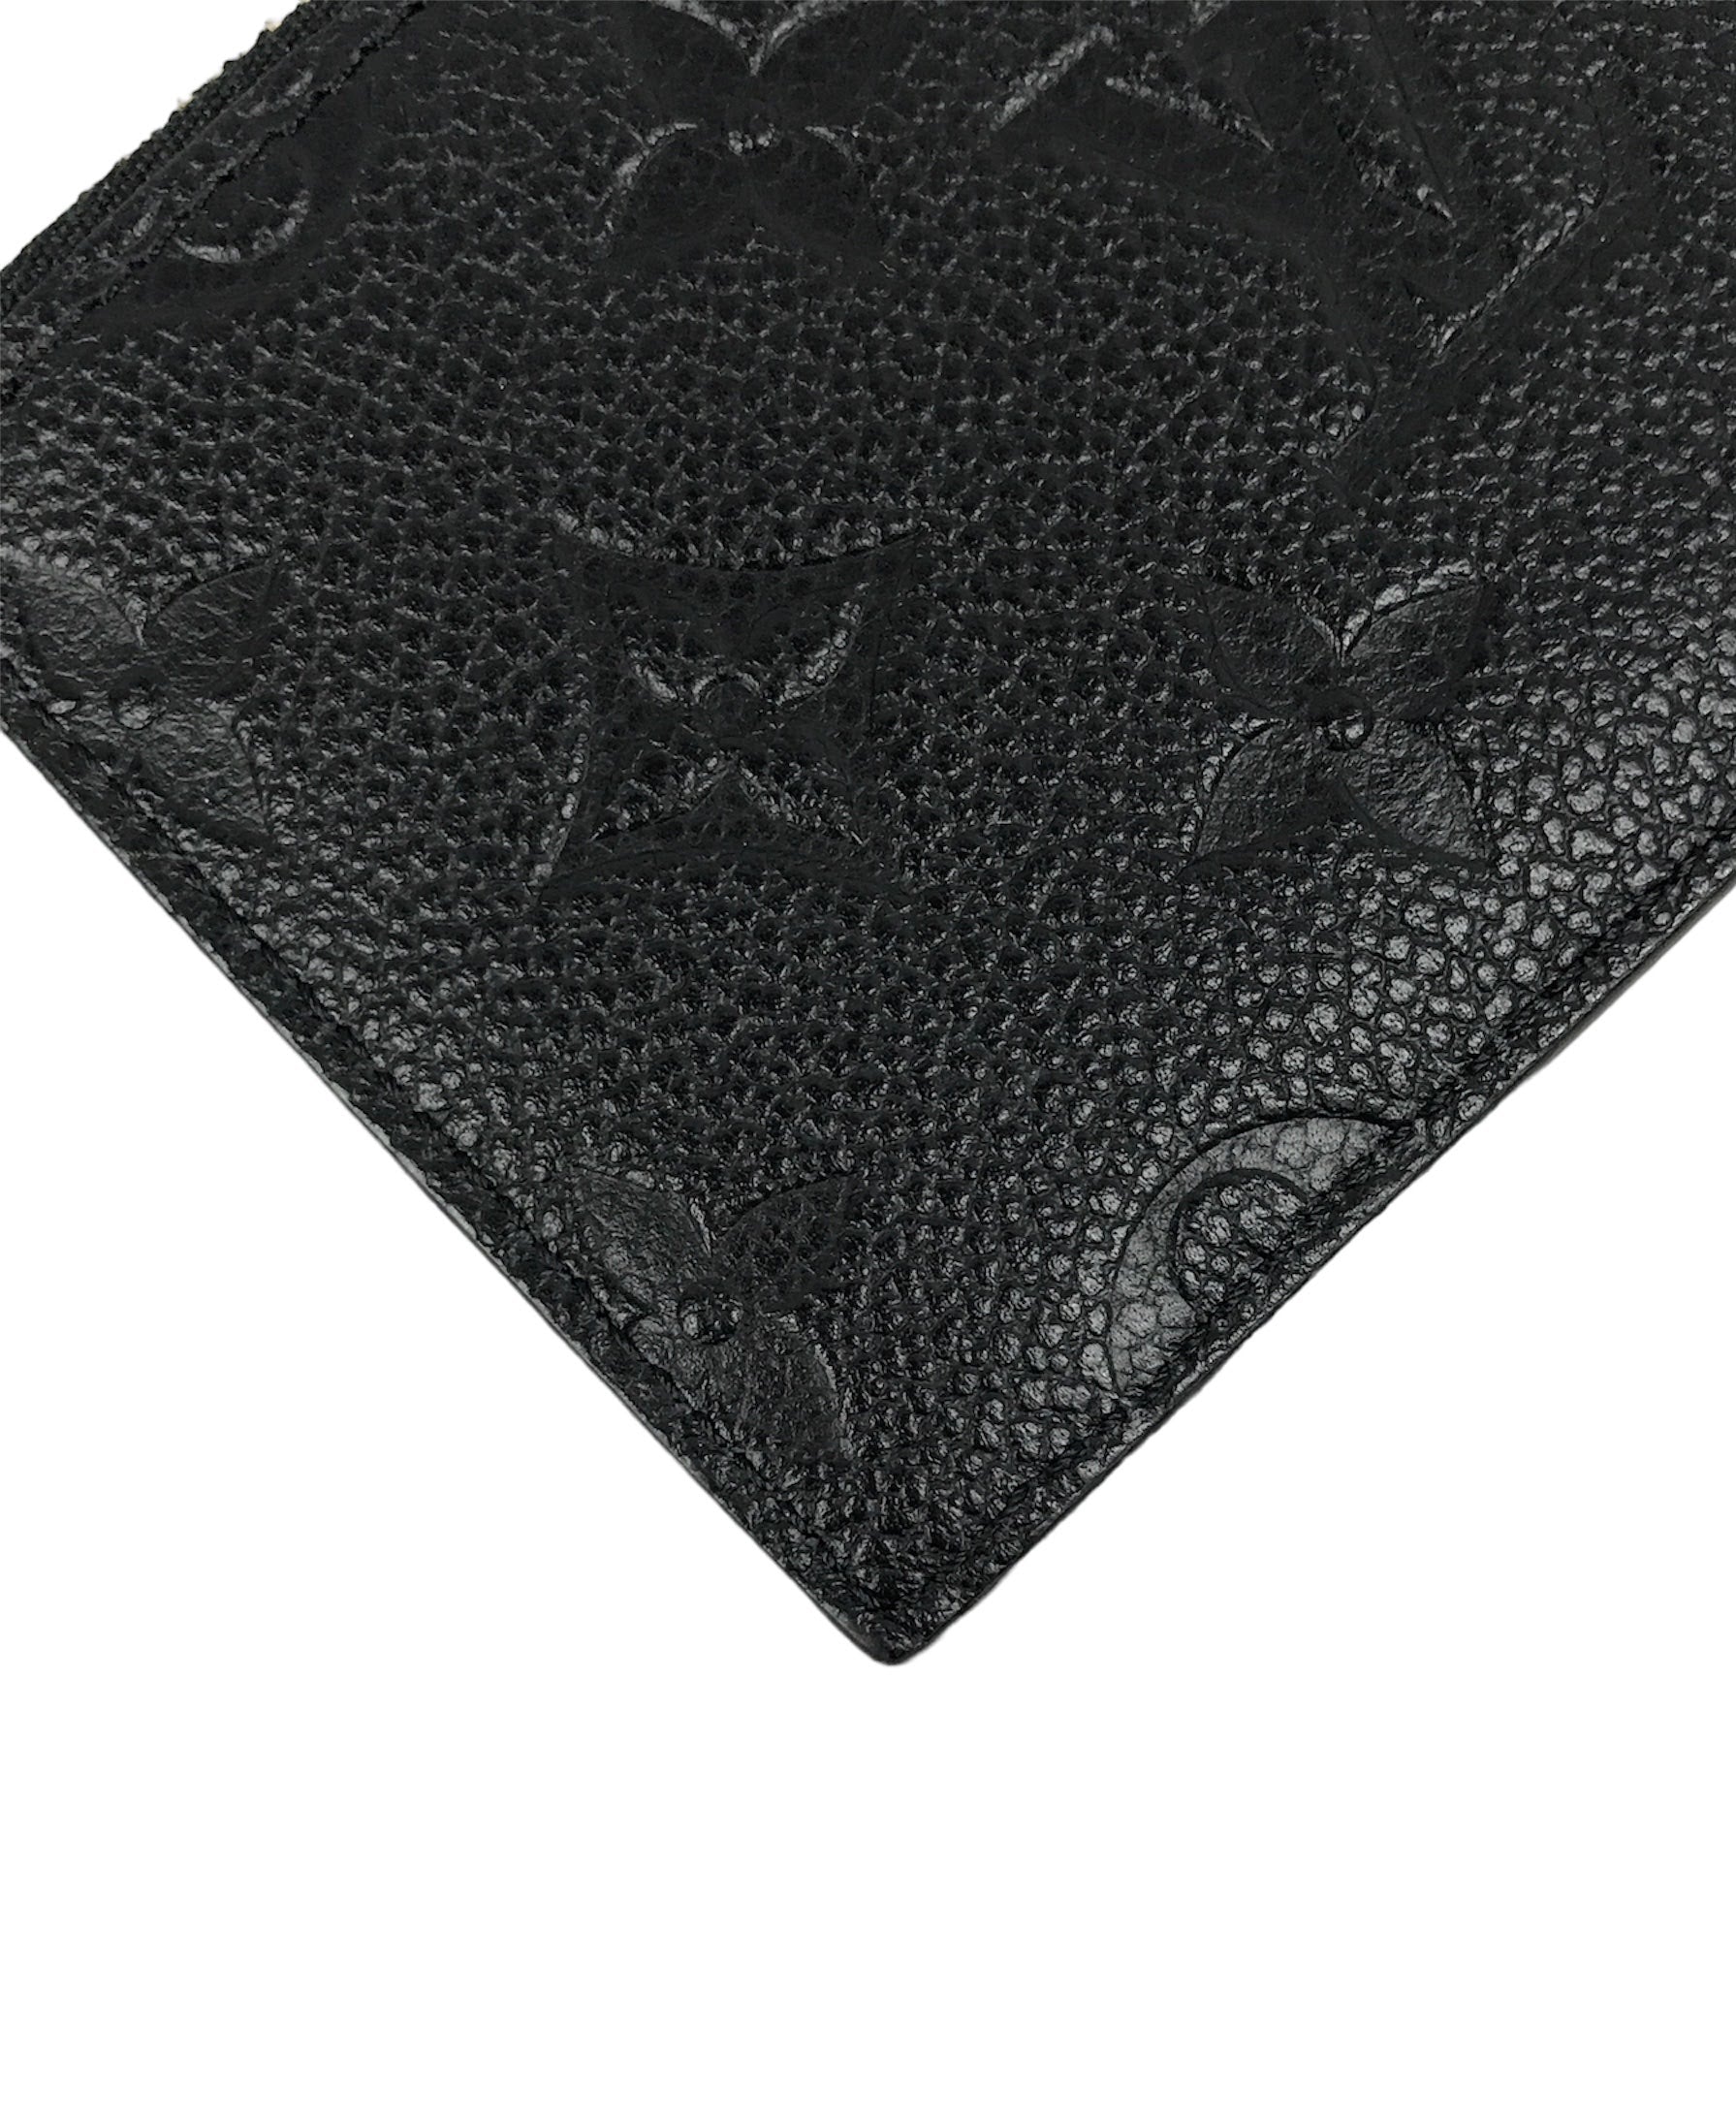 Empriente Black Leather Zip Card Case w/GHW